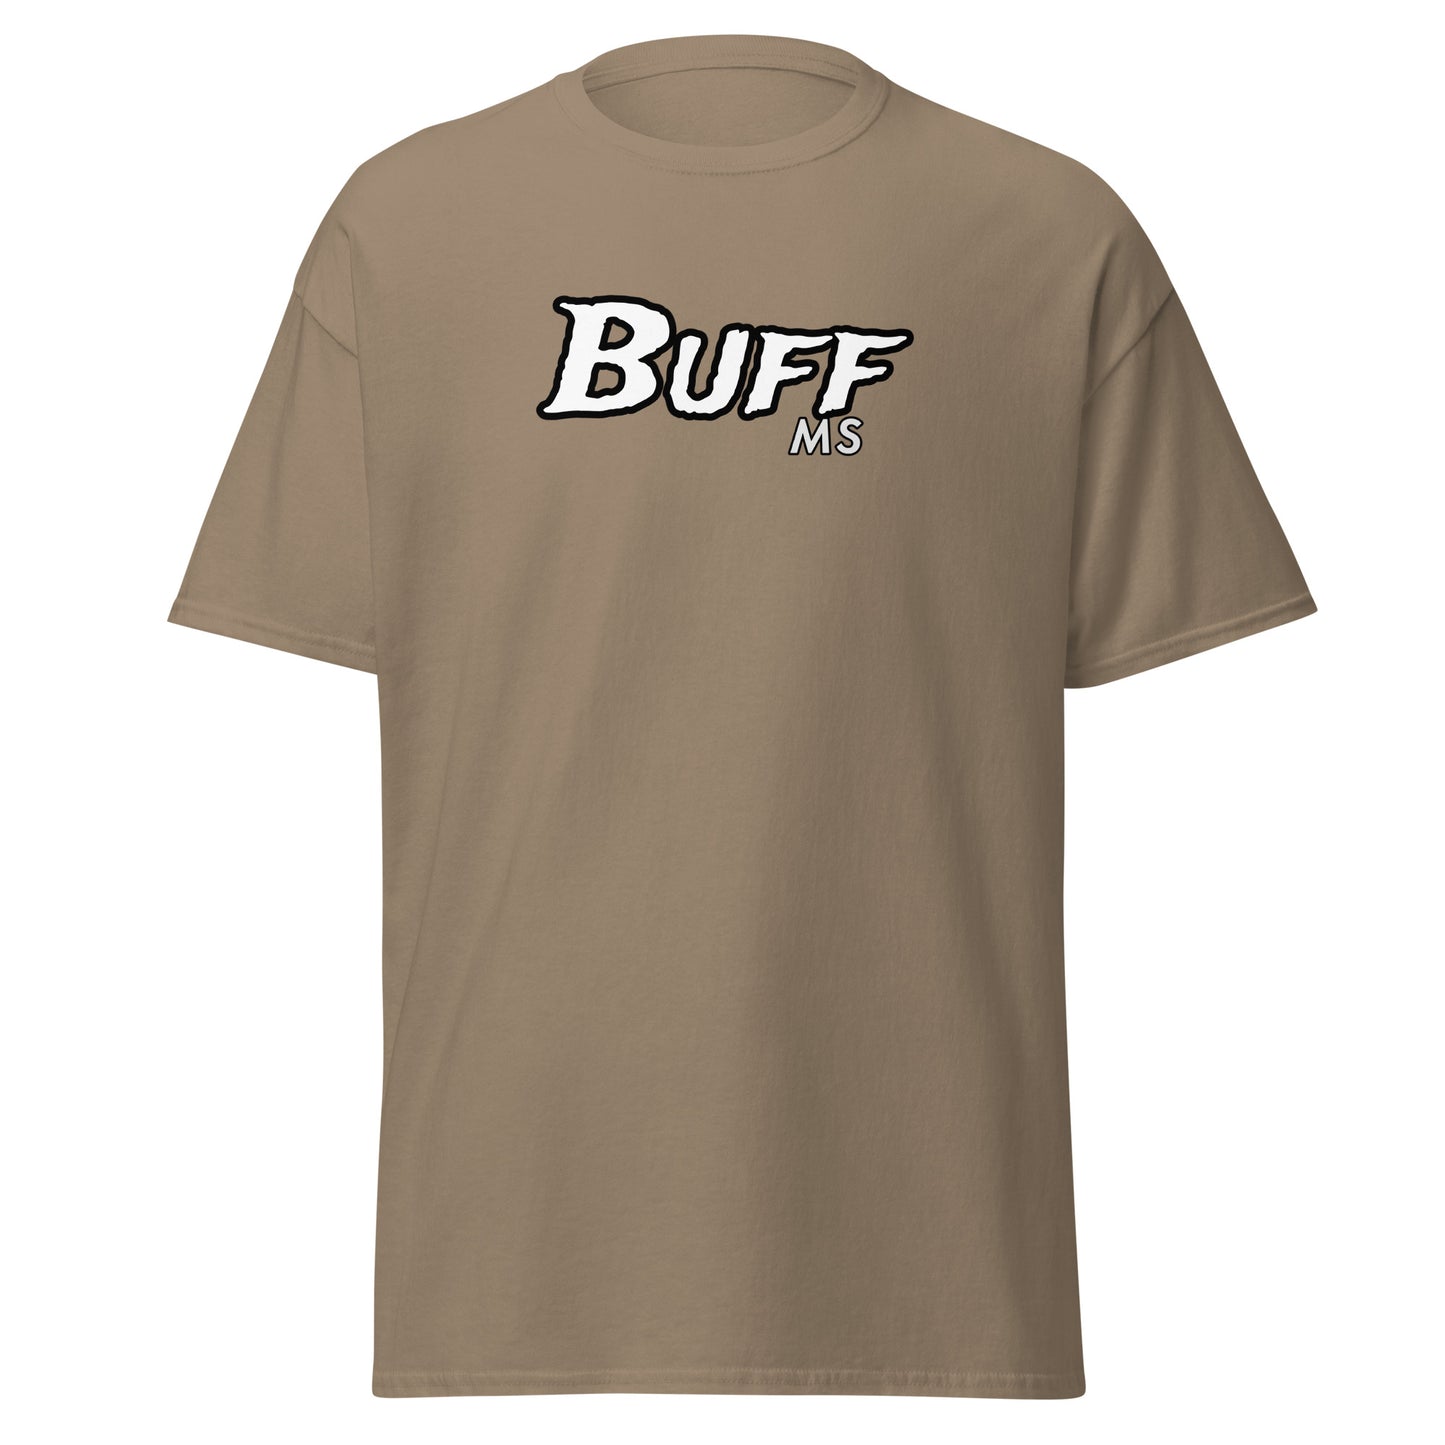 Buff MS Men's Classic T-Shirt